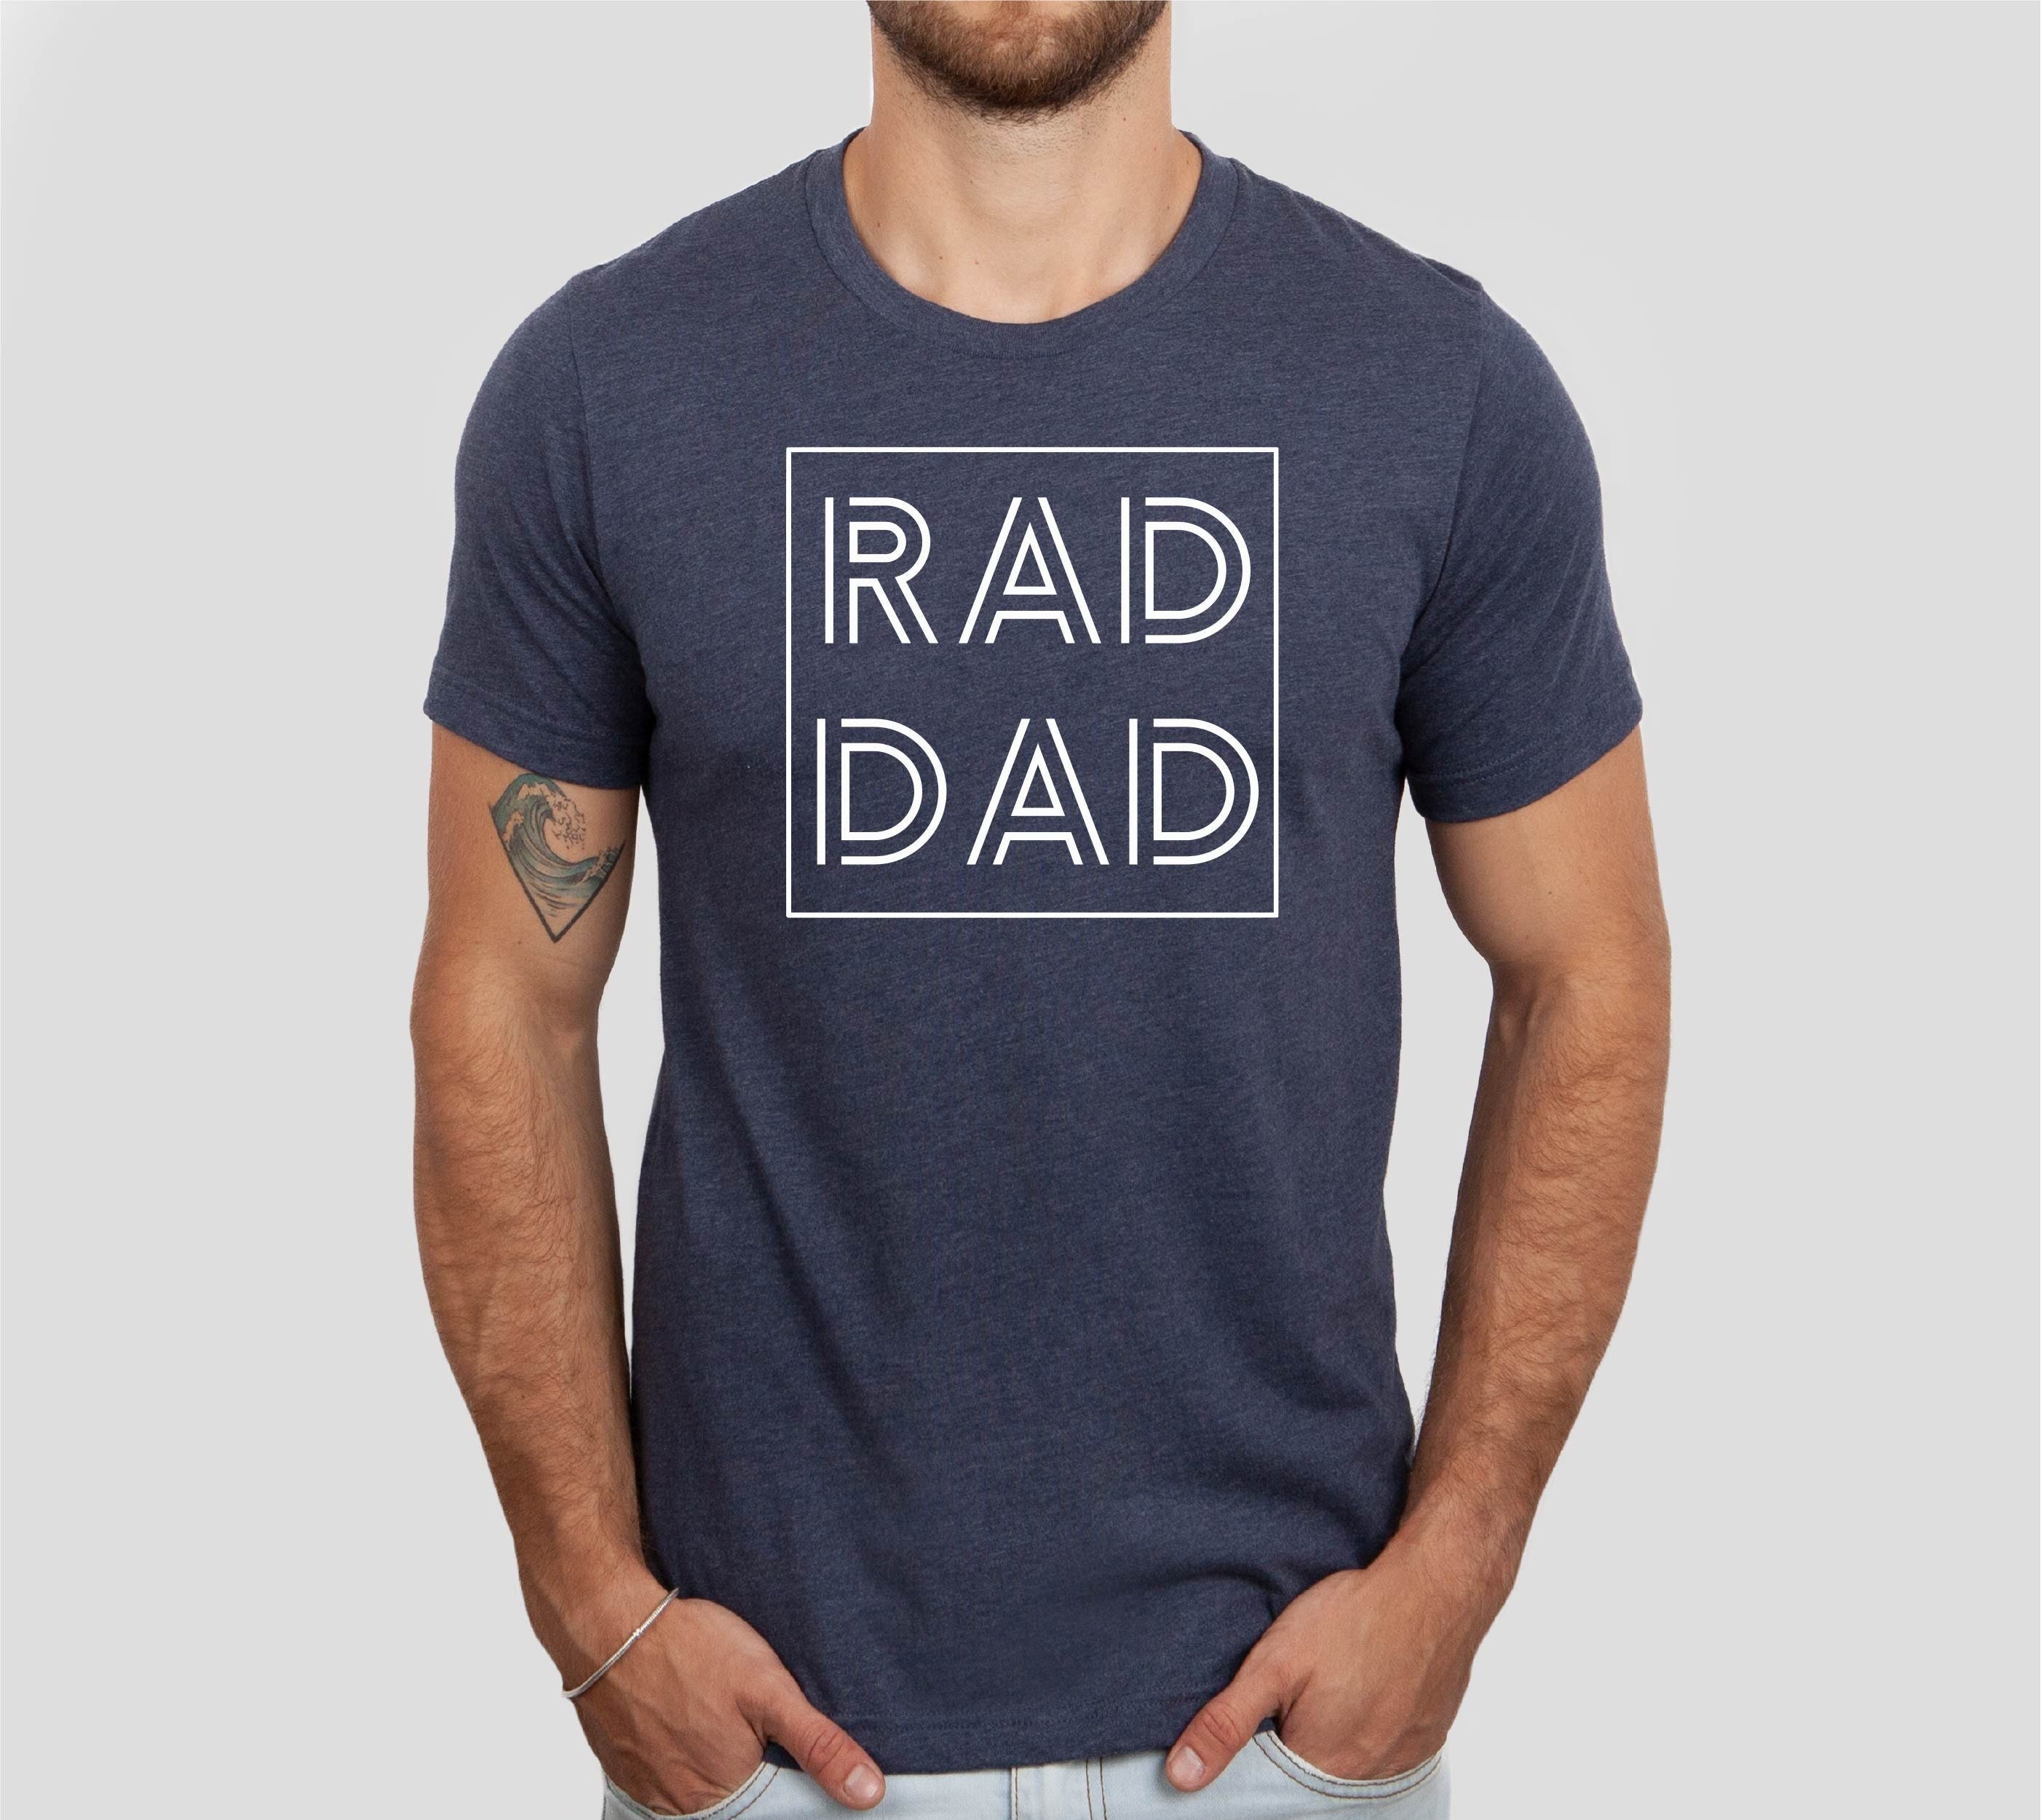 Rad Dad Tshirt, Dad Tshirt, Funny Dad Shirt, Father